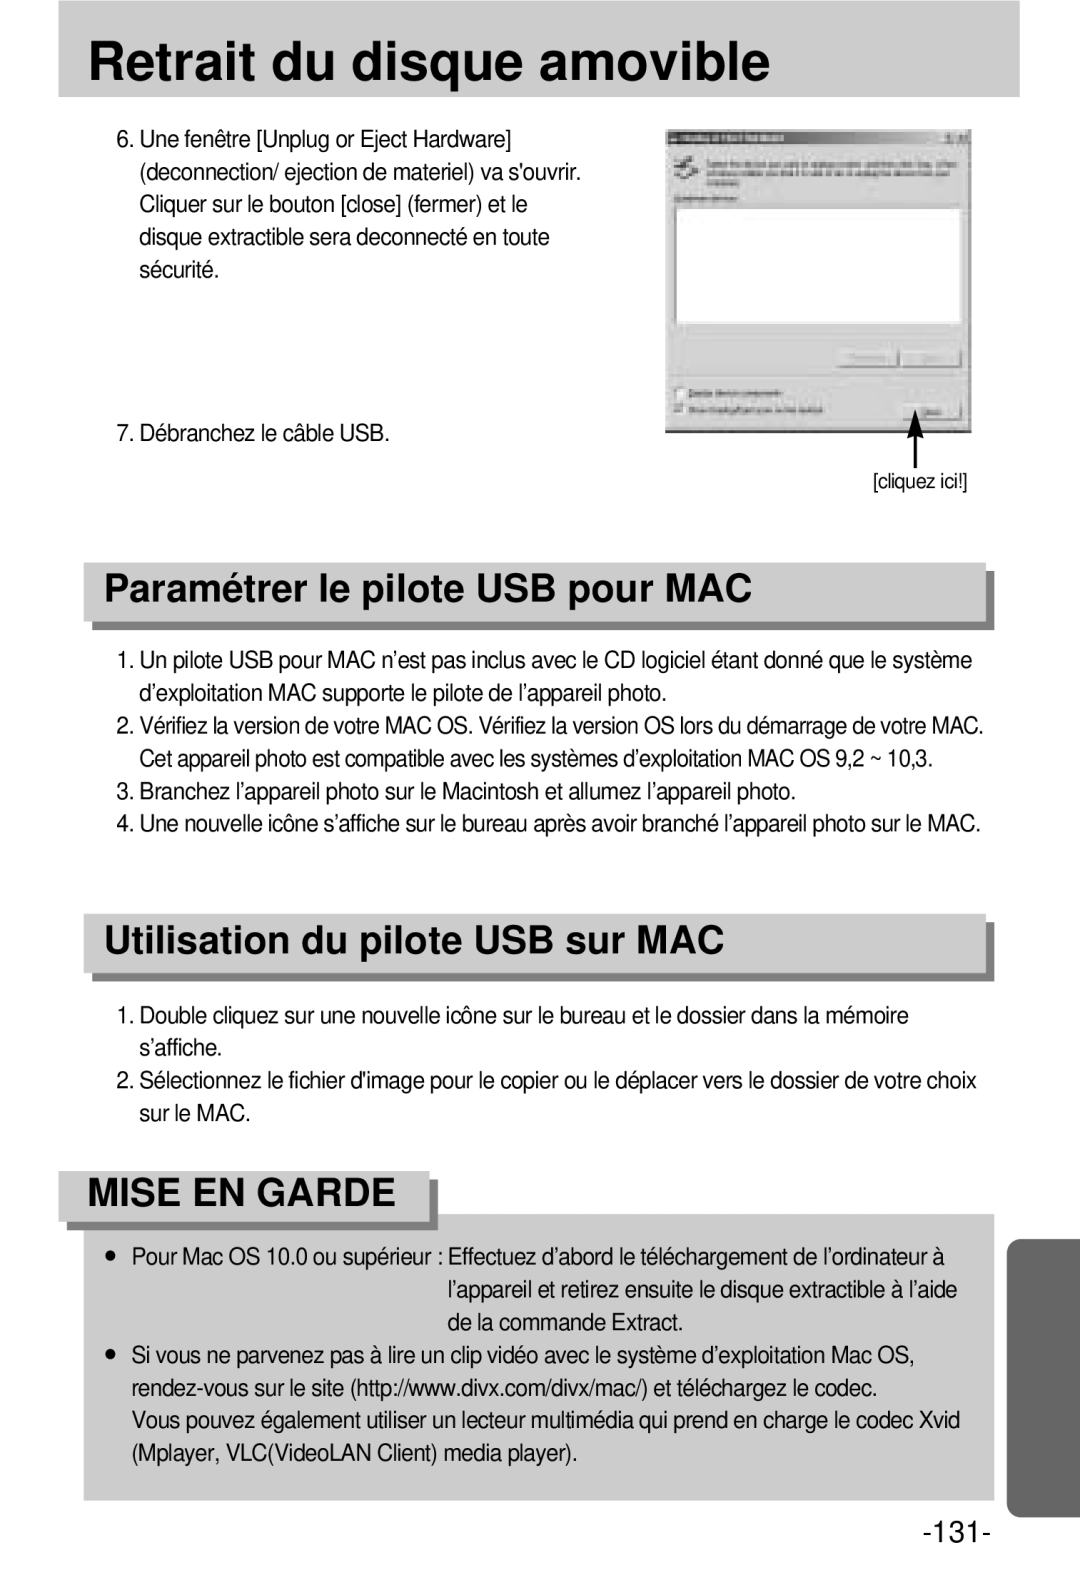 Samsung EC-V800ZSBA/FR manual Paramétrer le pilote USB pour MAC, Utilisation du pilote USB sur MAC 